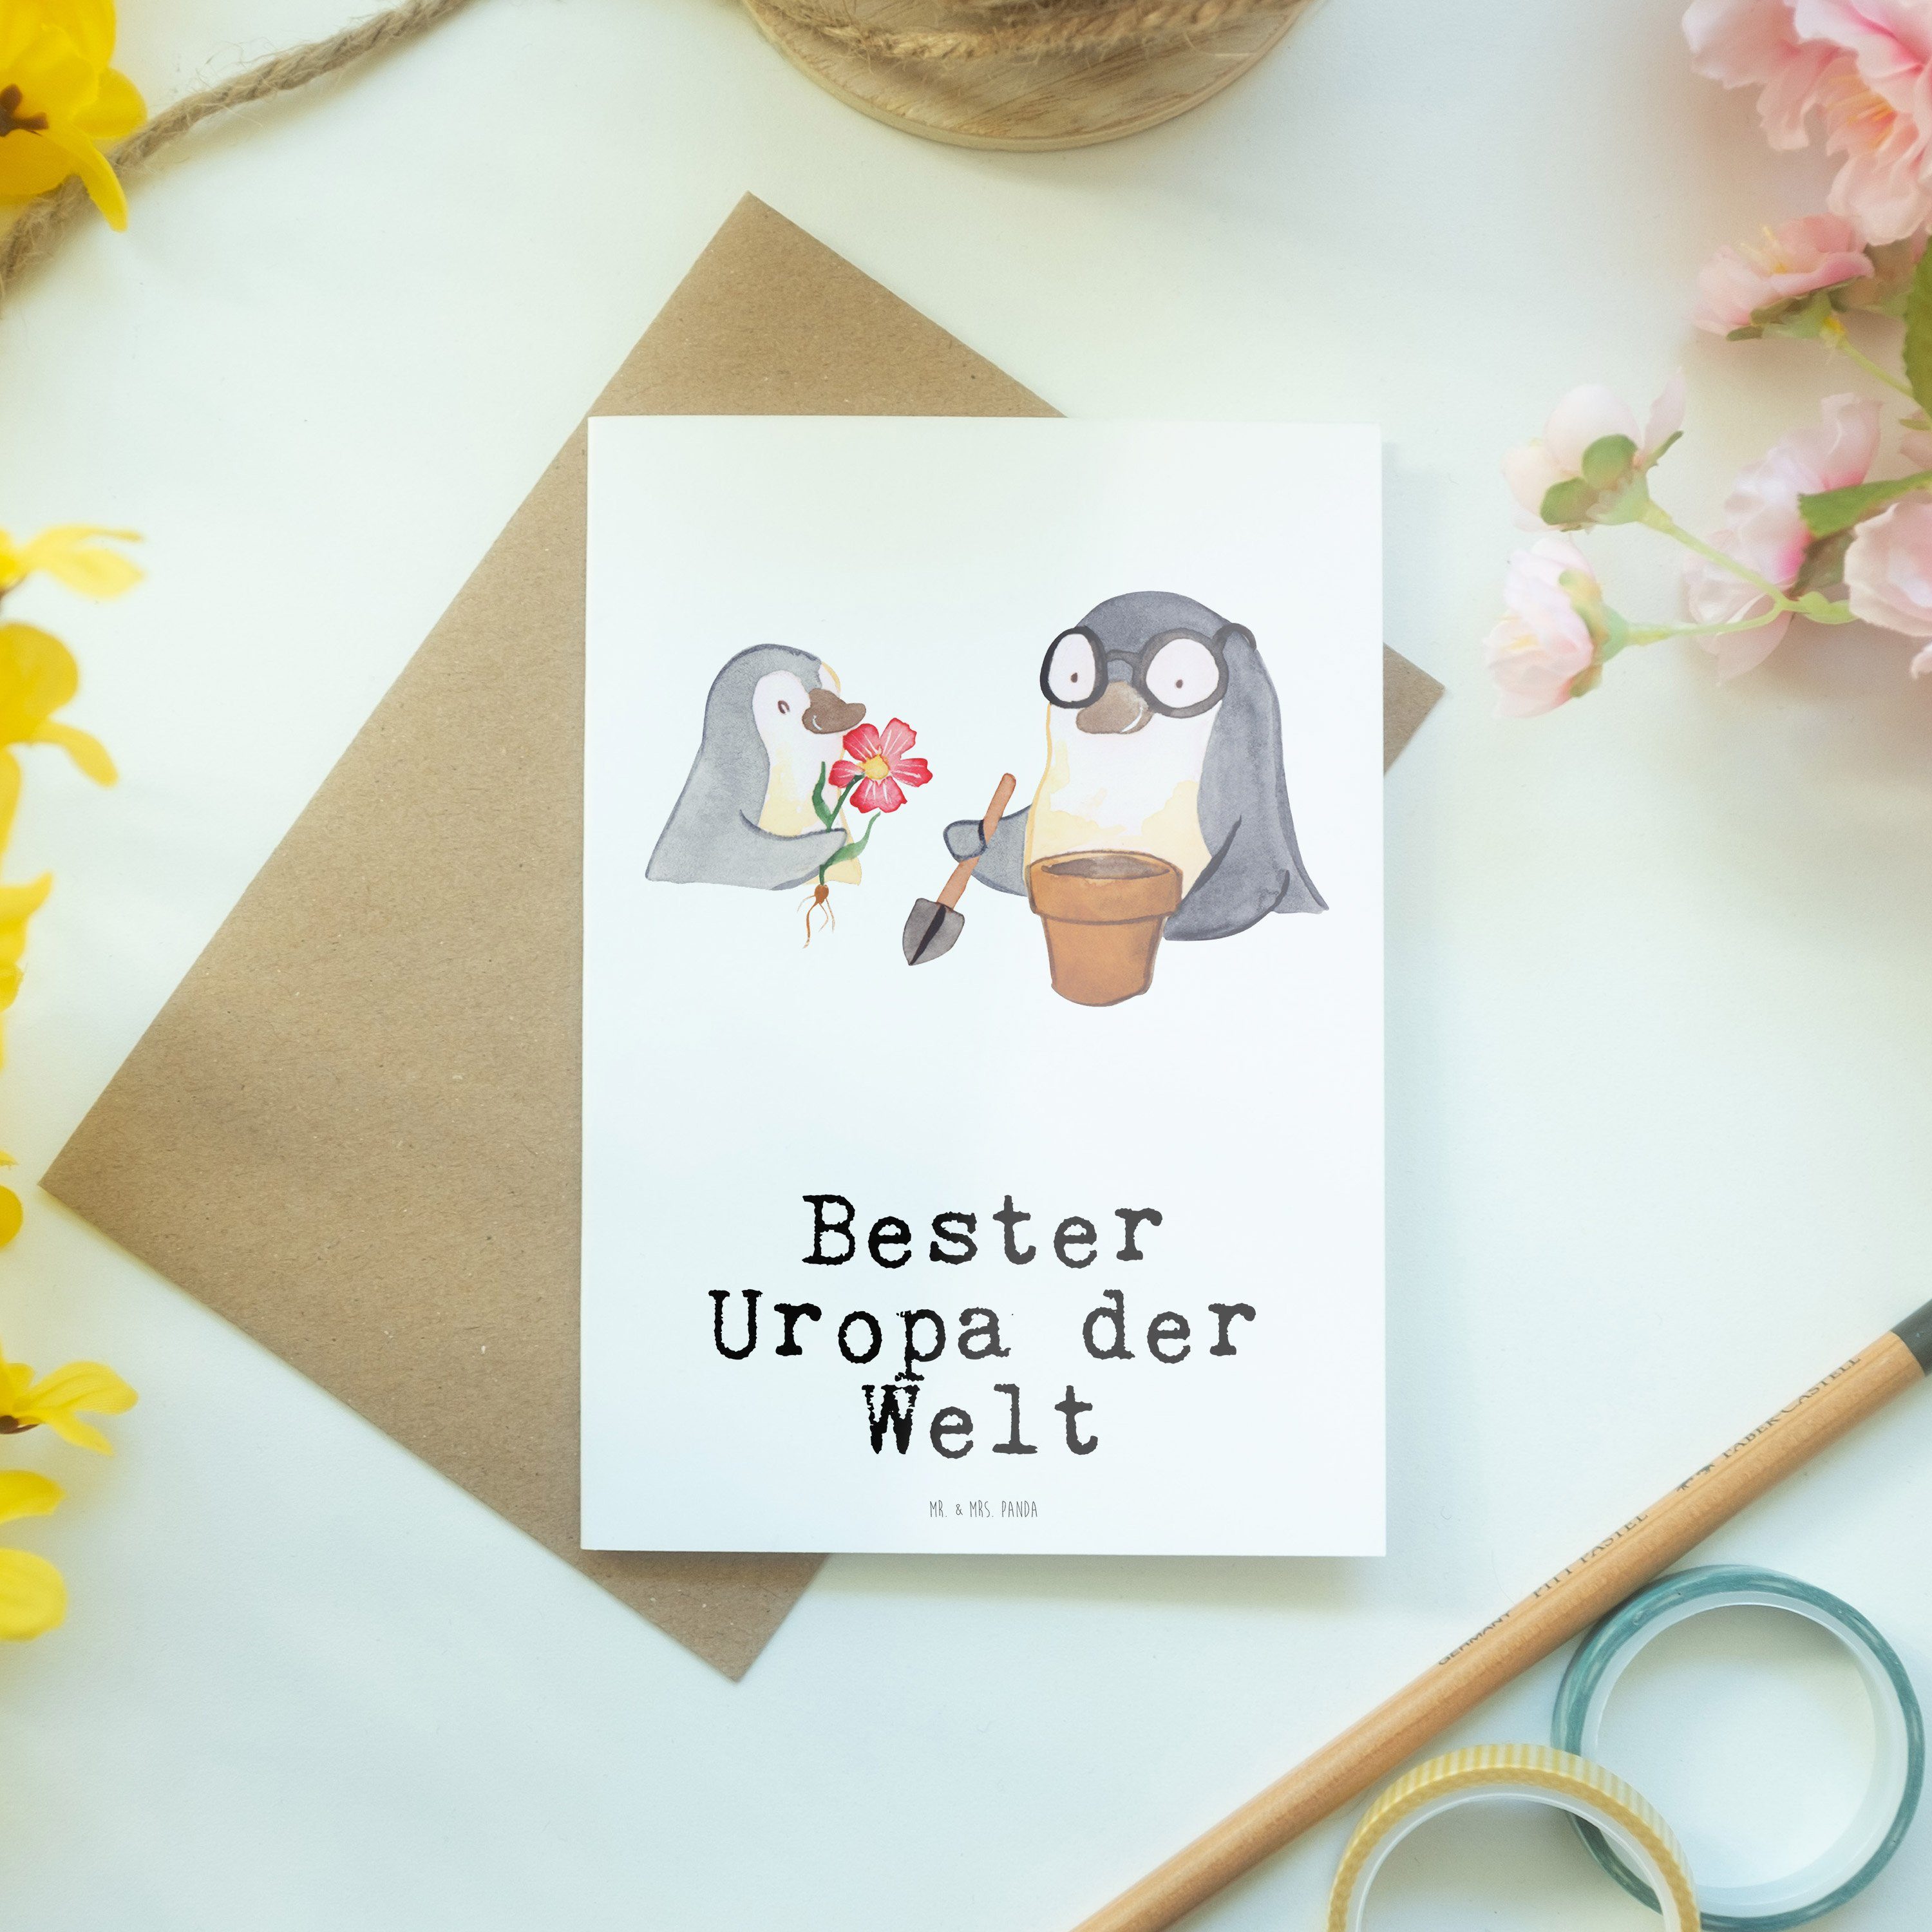 Mr. & Mrs. Geschenk, Grußkarte Welt - Bester Weiß der Pinguin Mitbri Uropa - Geschenktipp, Panda